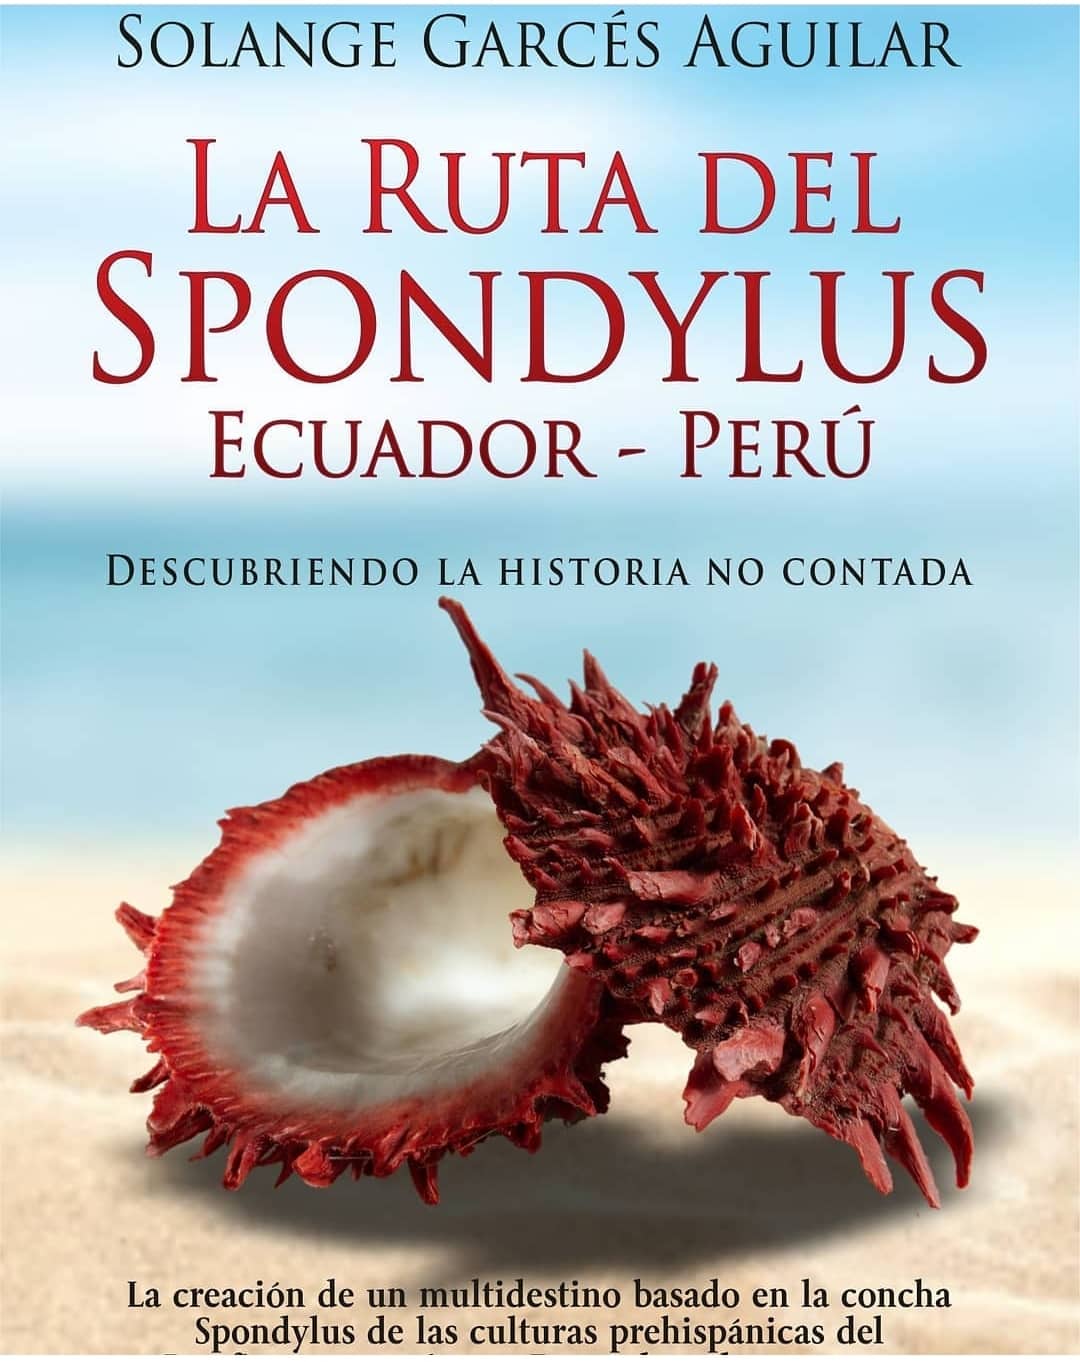 The Route of the Spondylus Ecuador - Peru| ©Solange Garcés Aguilar